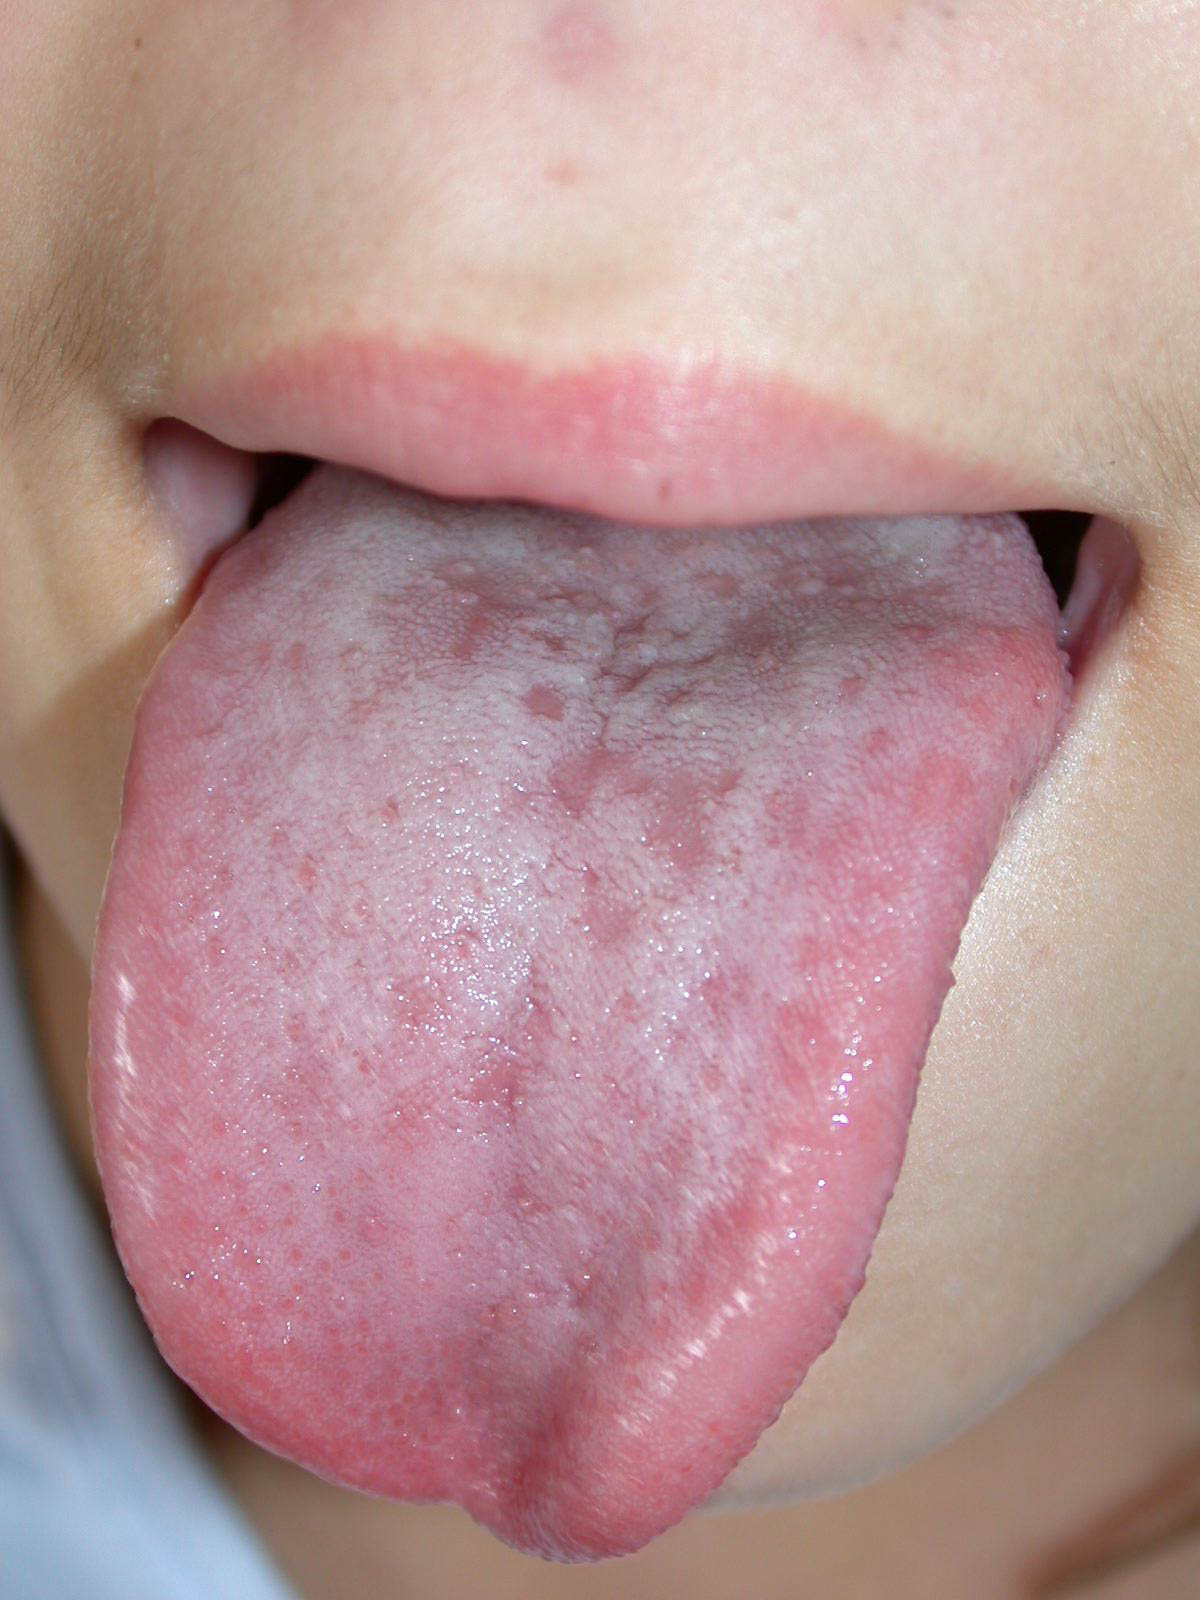 vésicules sur la langue